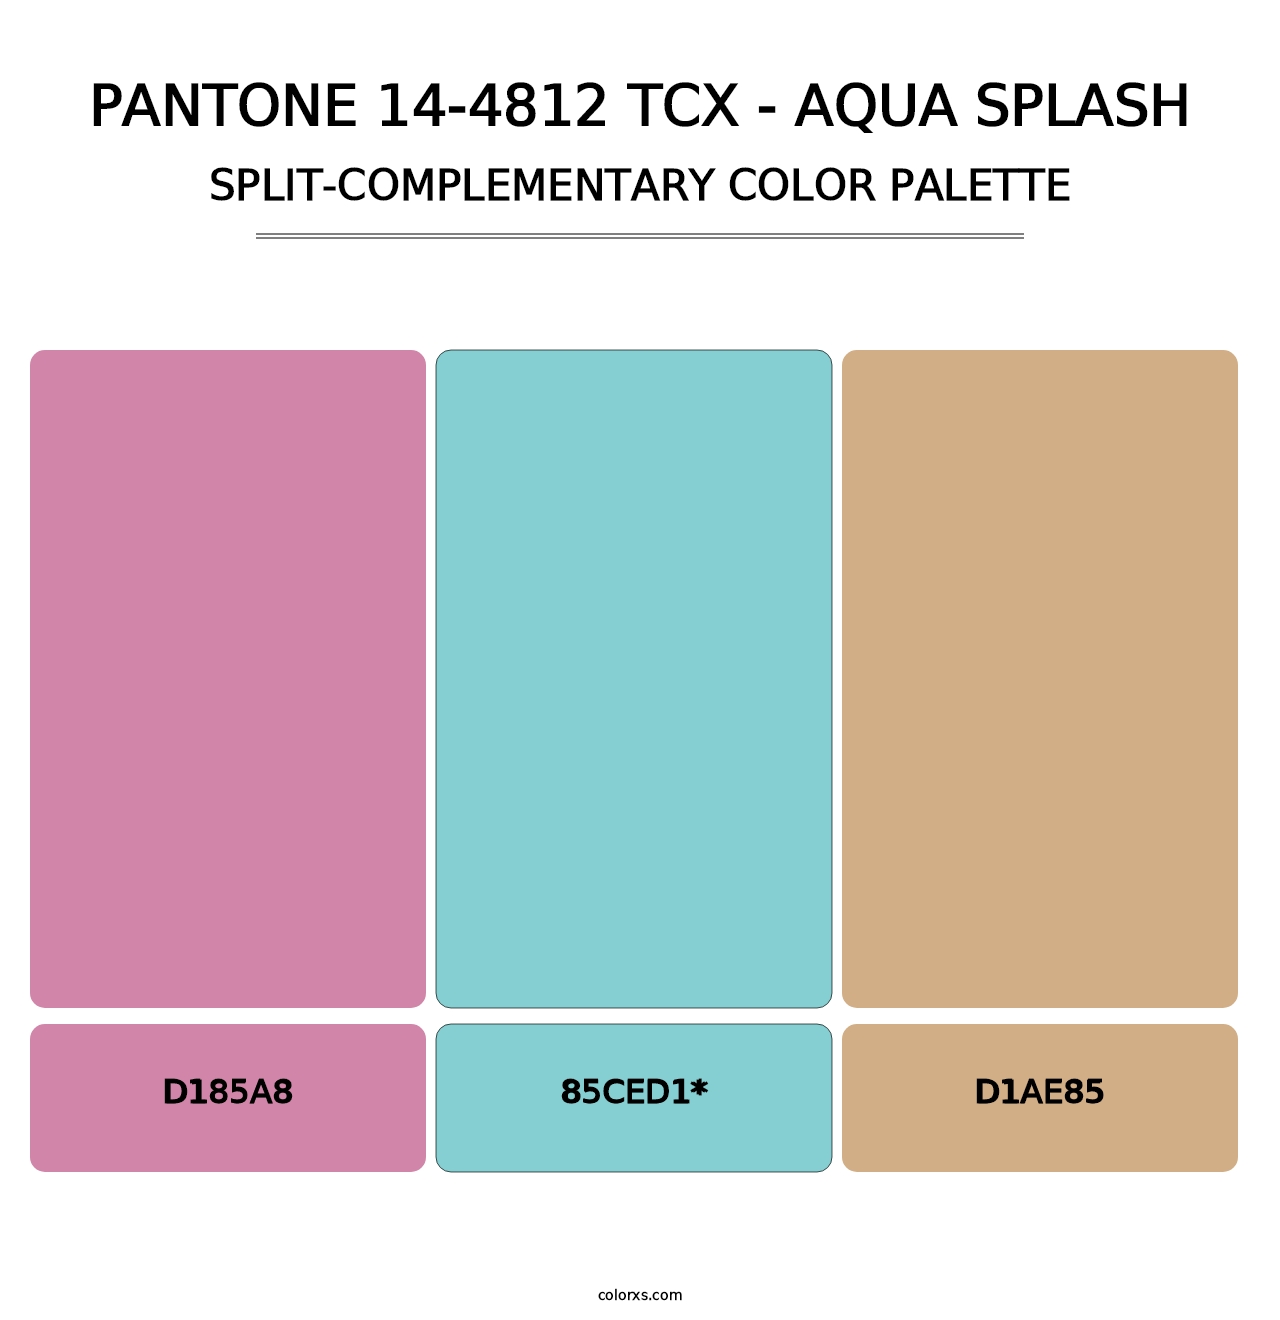 PANTONE 14-4812 TCX - Aqua Splash - Split-Complementary Color Palette